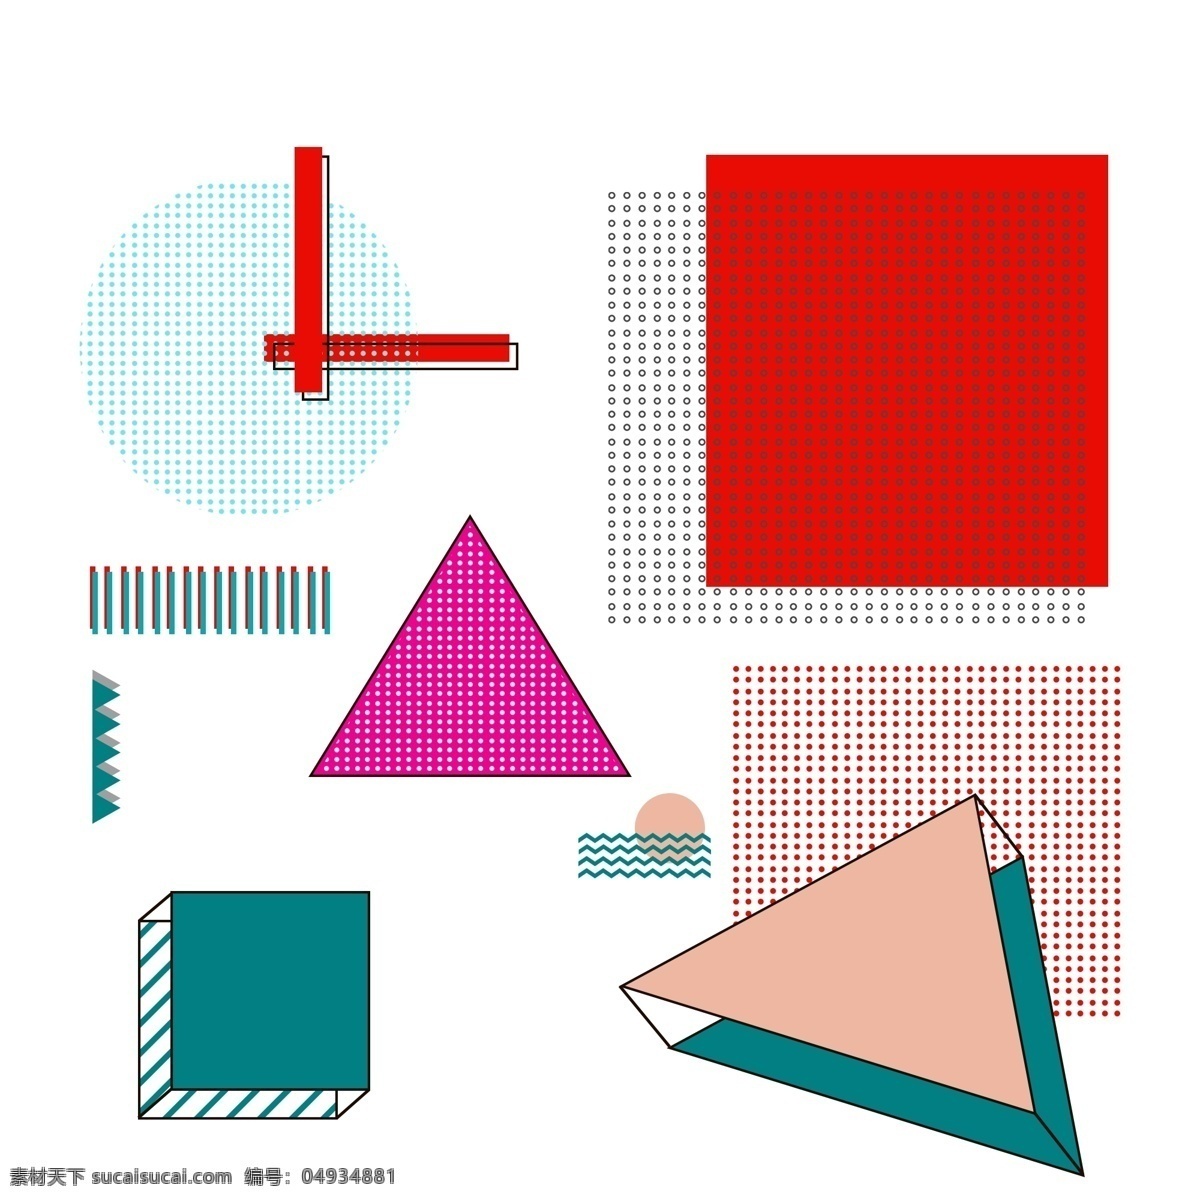 孟菲斯 风格 元素 多边形 不规则 几何 线条 波浪 孟菲斯元素 孟菲斯风格 元素设计 几何元素 线条元素 三角 矩形